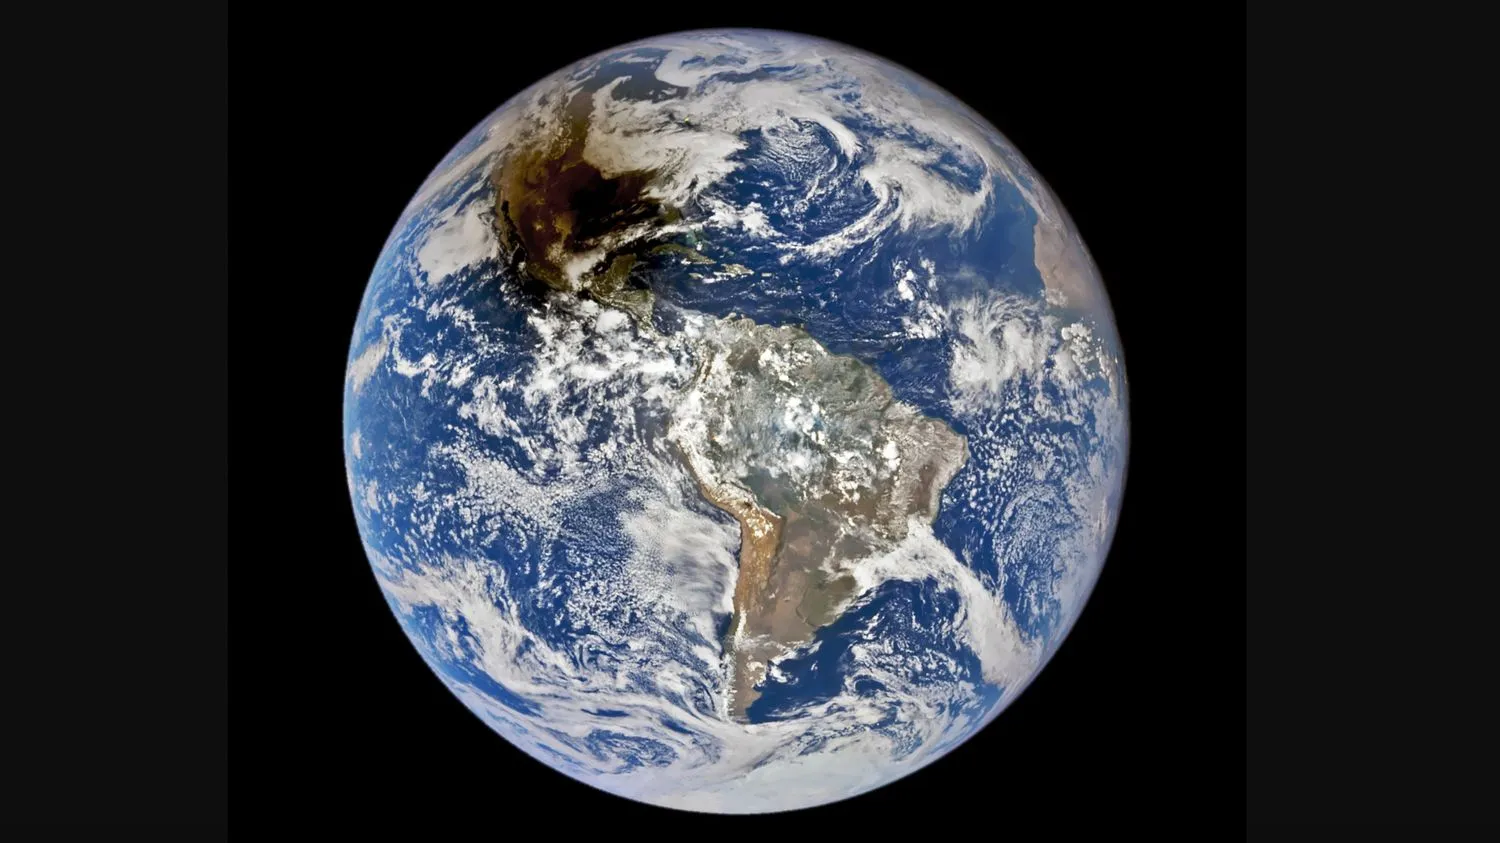 Die EPIC-Kamera der NASA an Bord der DSCOVR-Raumsonde hat dieses Foto der ringförmigen Sonnenfinsternis vom 14. Oktober 2023 aus einer Entfernung von fast 1 Million Meilen (1,6 Millionen Kilometer) aufgenommen.